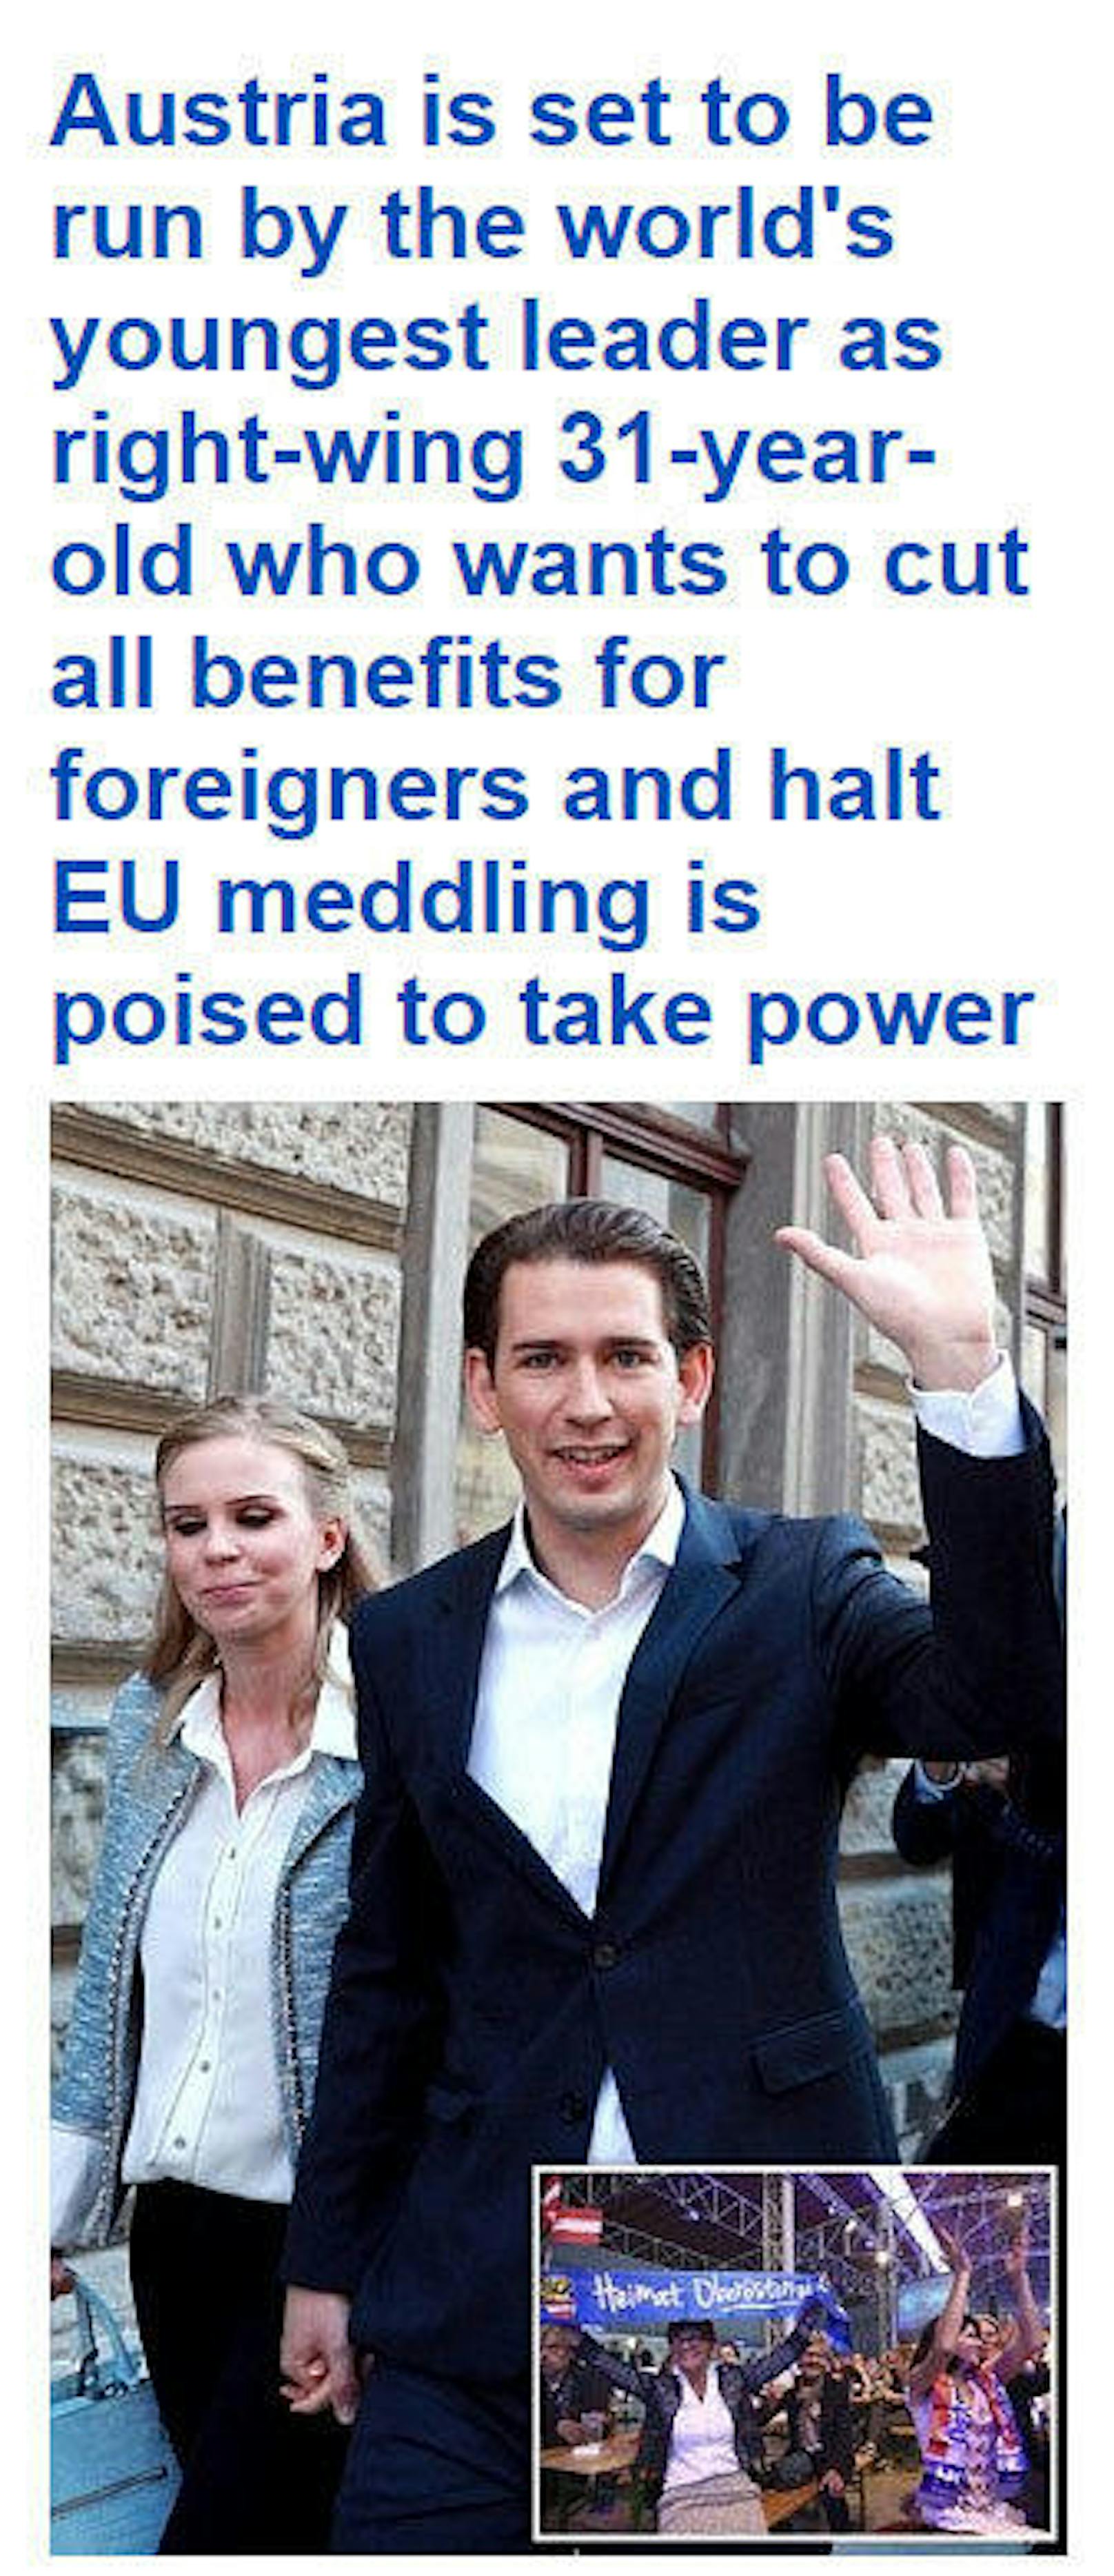 <b>DailyMail.co.uk:</b> "Österreich wird bald von jüngsten Kanzler weltweit regiert, nachdem ein rechtspolitische 31-Jähriger der alle Zuschüsse an Ausländer kürzen und EU-Eingriffe stoppen will die Macht ergreift"